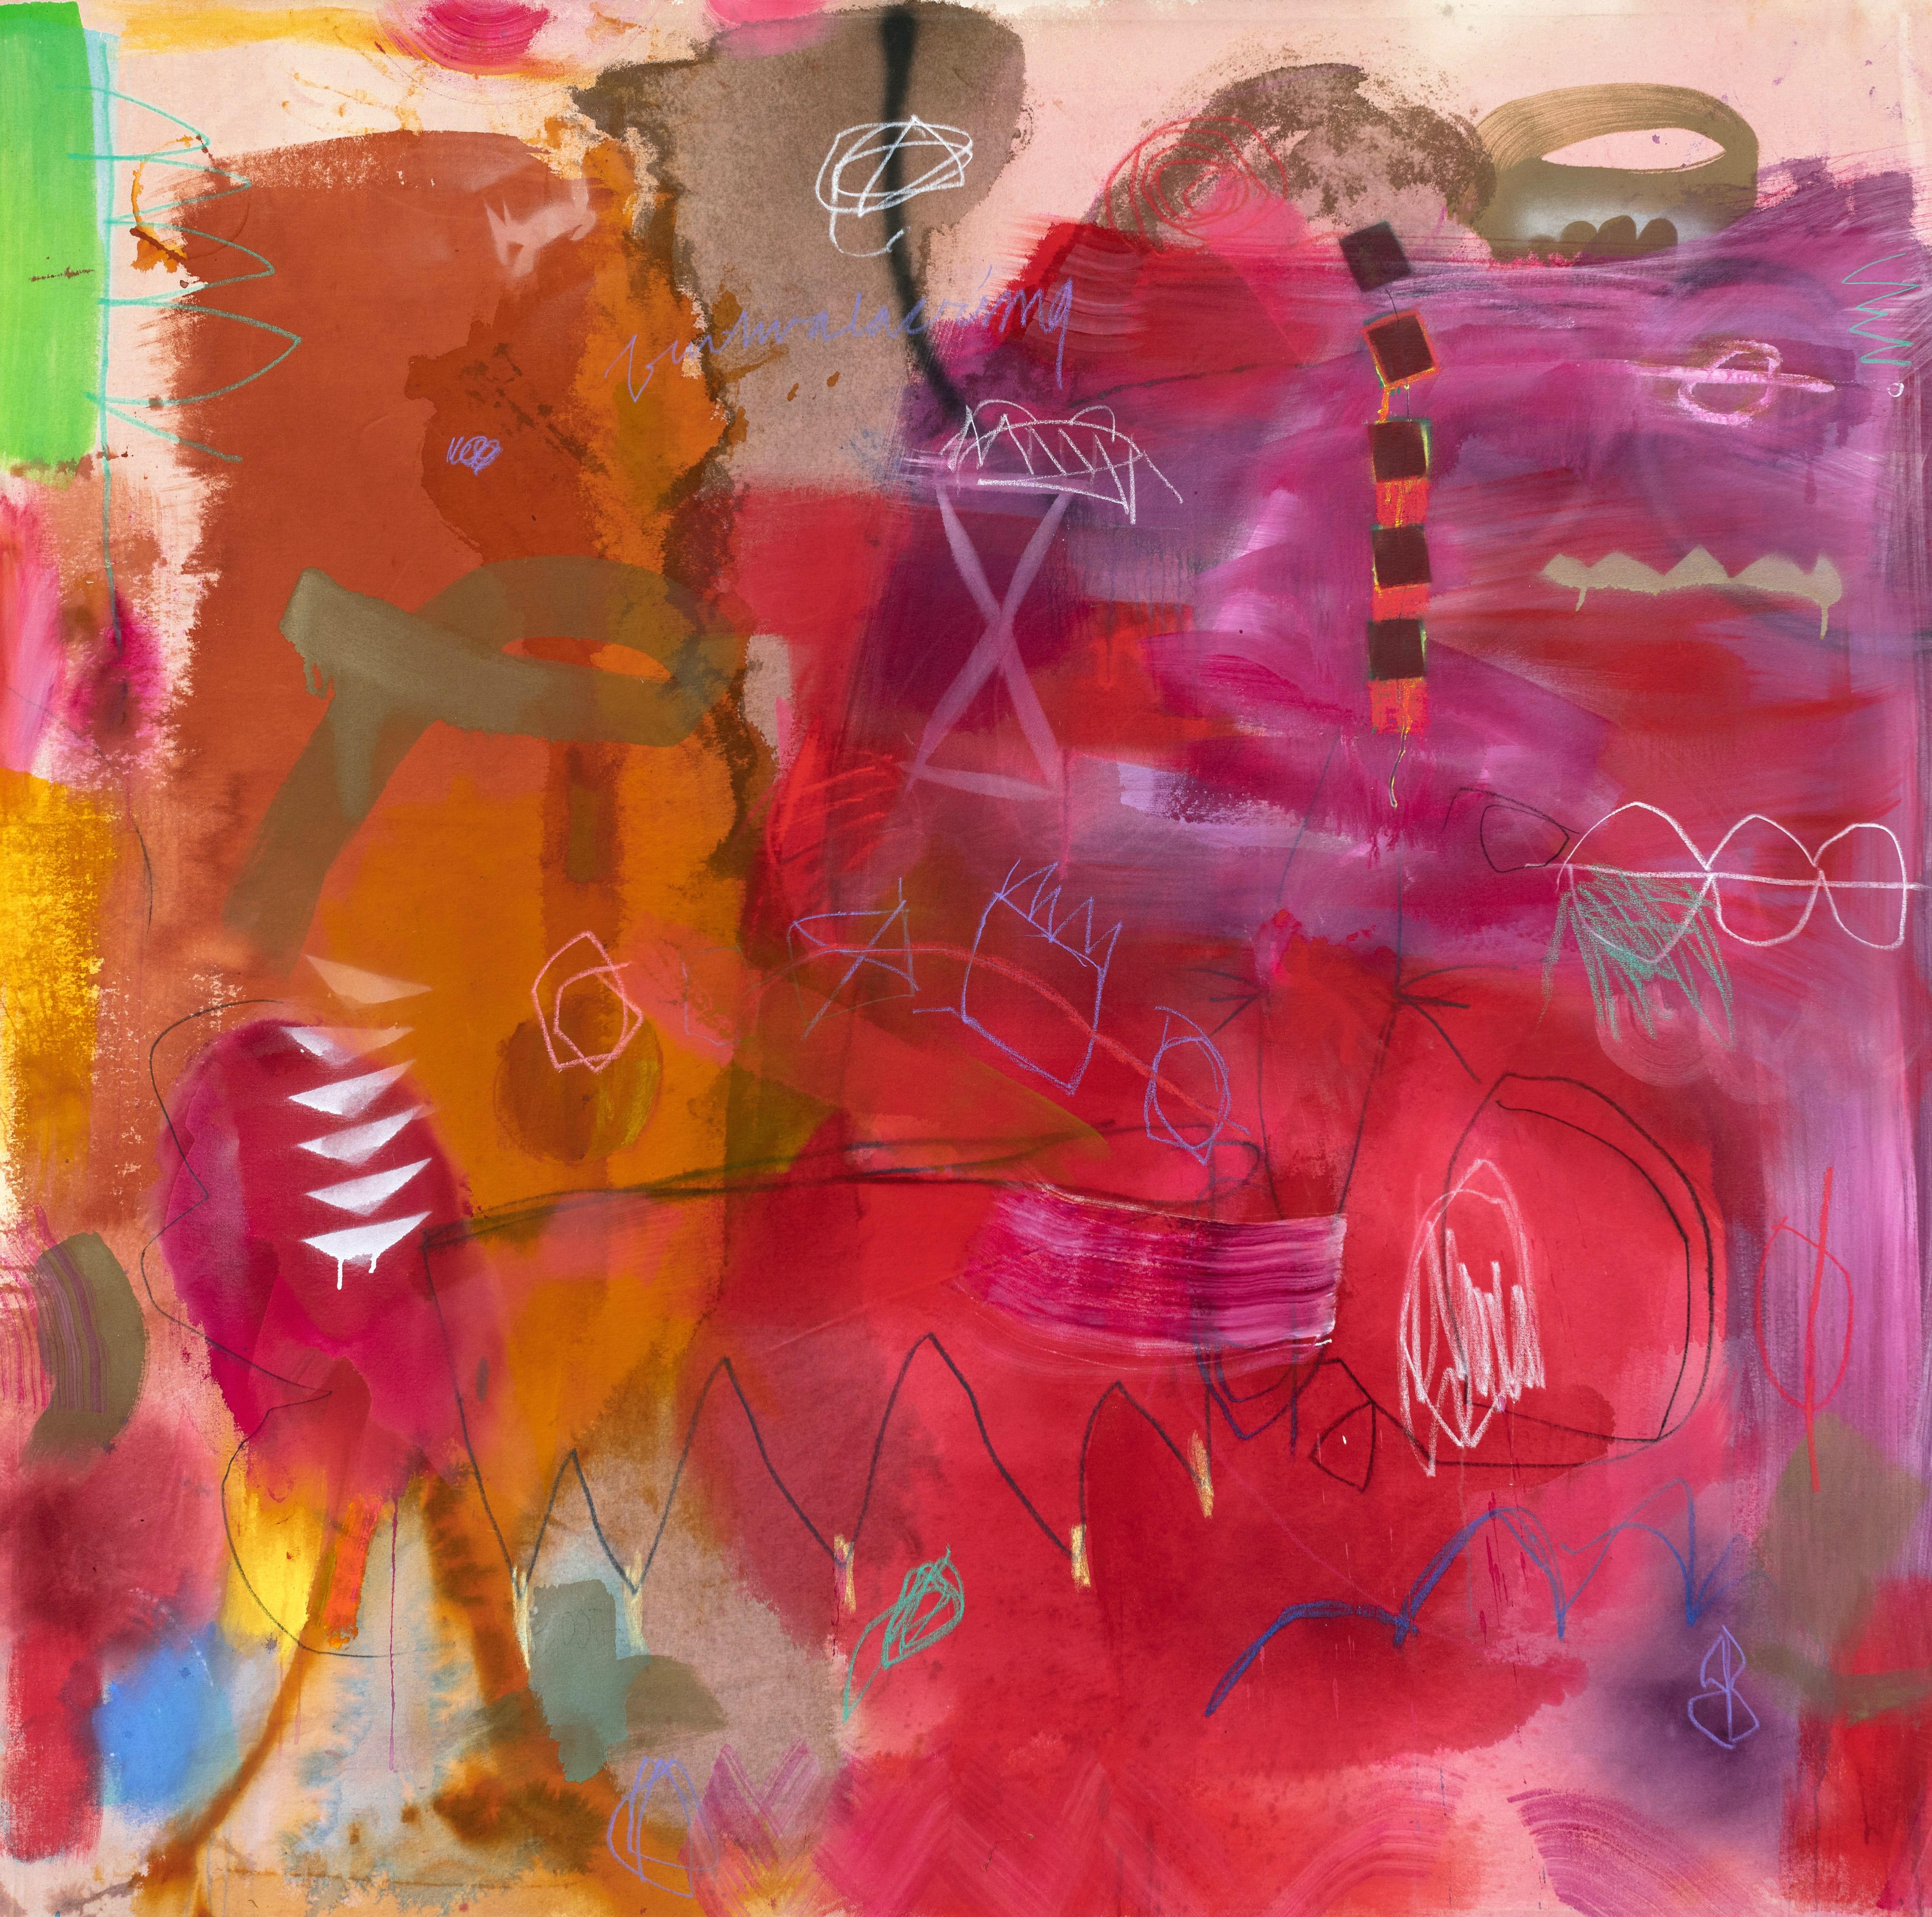 Jane Booth
"Mozambique
Acrylique, peinture en aérosol, peinture domestique, crayons de couleur sur toile brute
65 x 64 in.

"Il y a deux polarités vers lesquelles je gravite dans mon travail : l'une est primordiale et atmosphérique tandis que